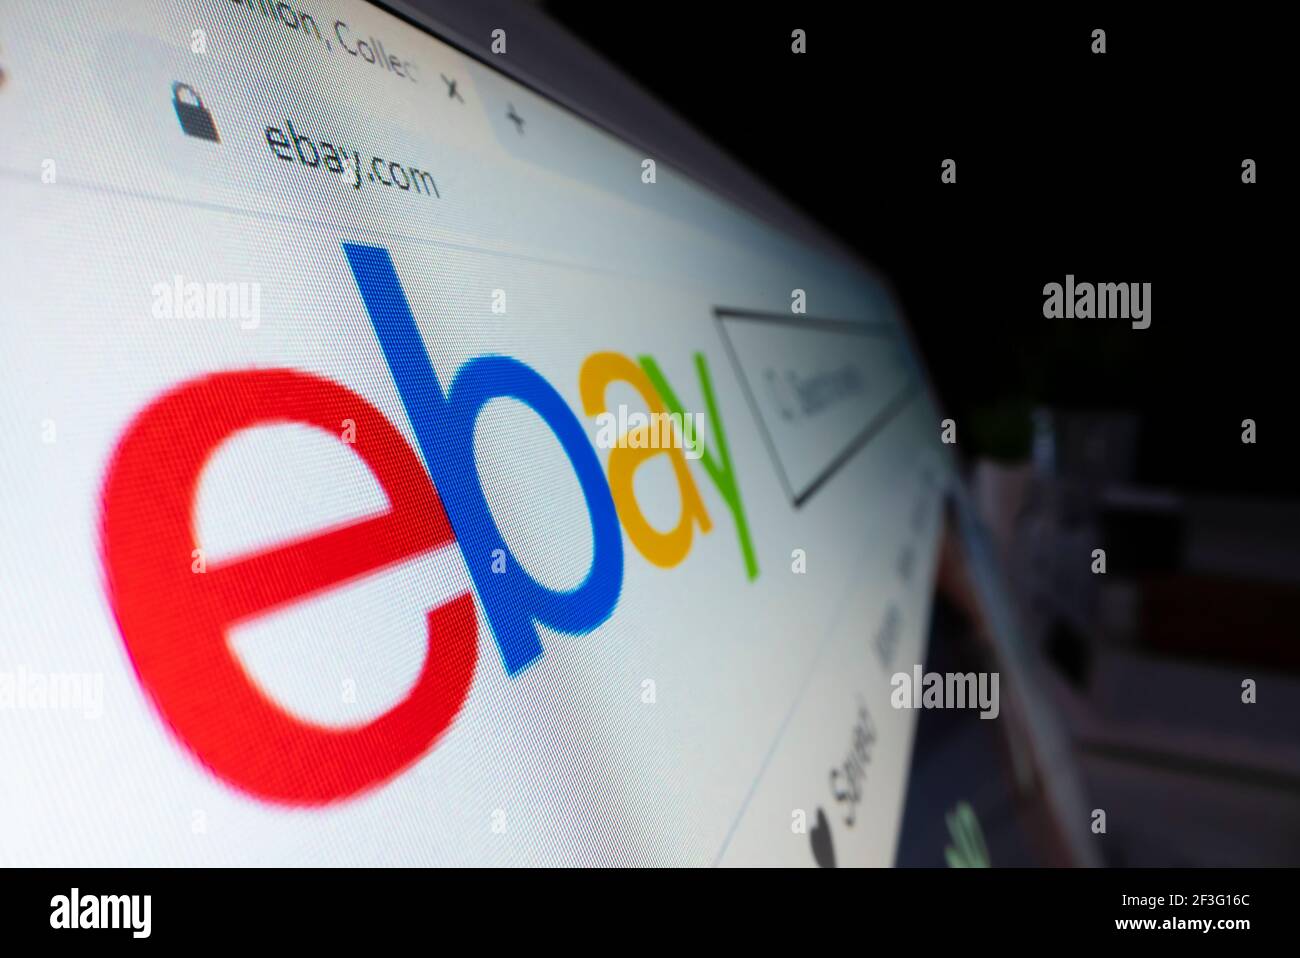 Vista ravvicinata del logo ebay sul suo sito Web Foto Stock